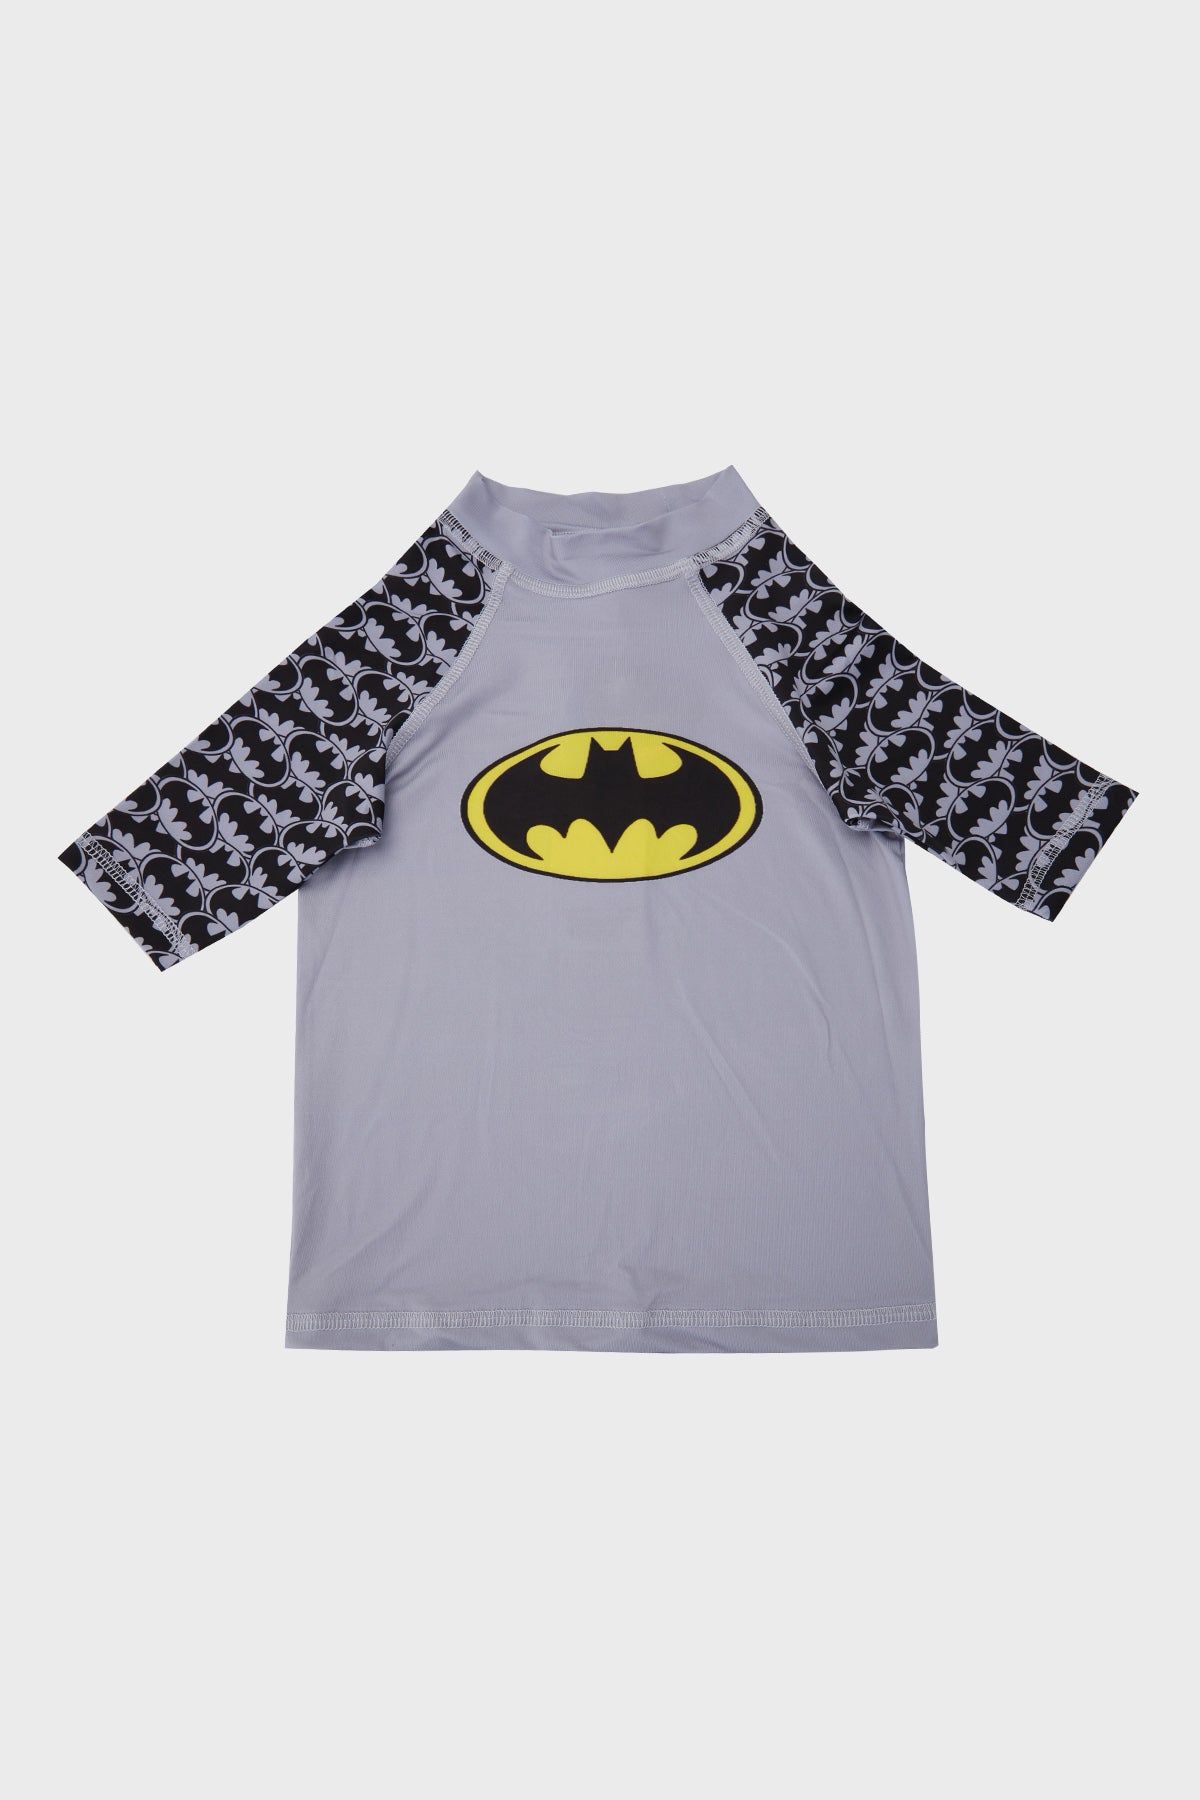 Slipstop Bruce Batman Uv Korumalı Mayo Kısa Kollu Erkek Çocuk T Shirt ST21120040 GRİ